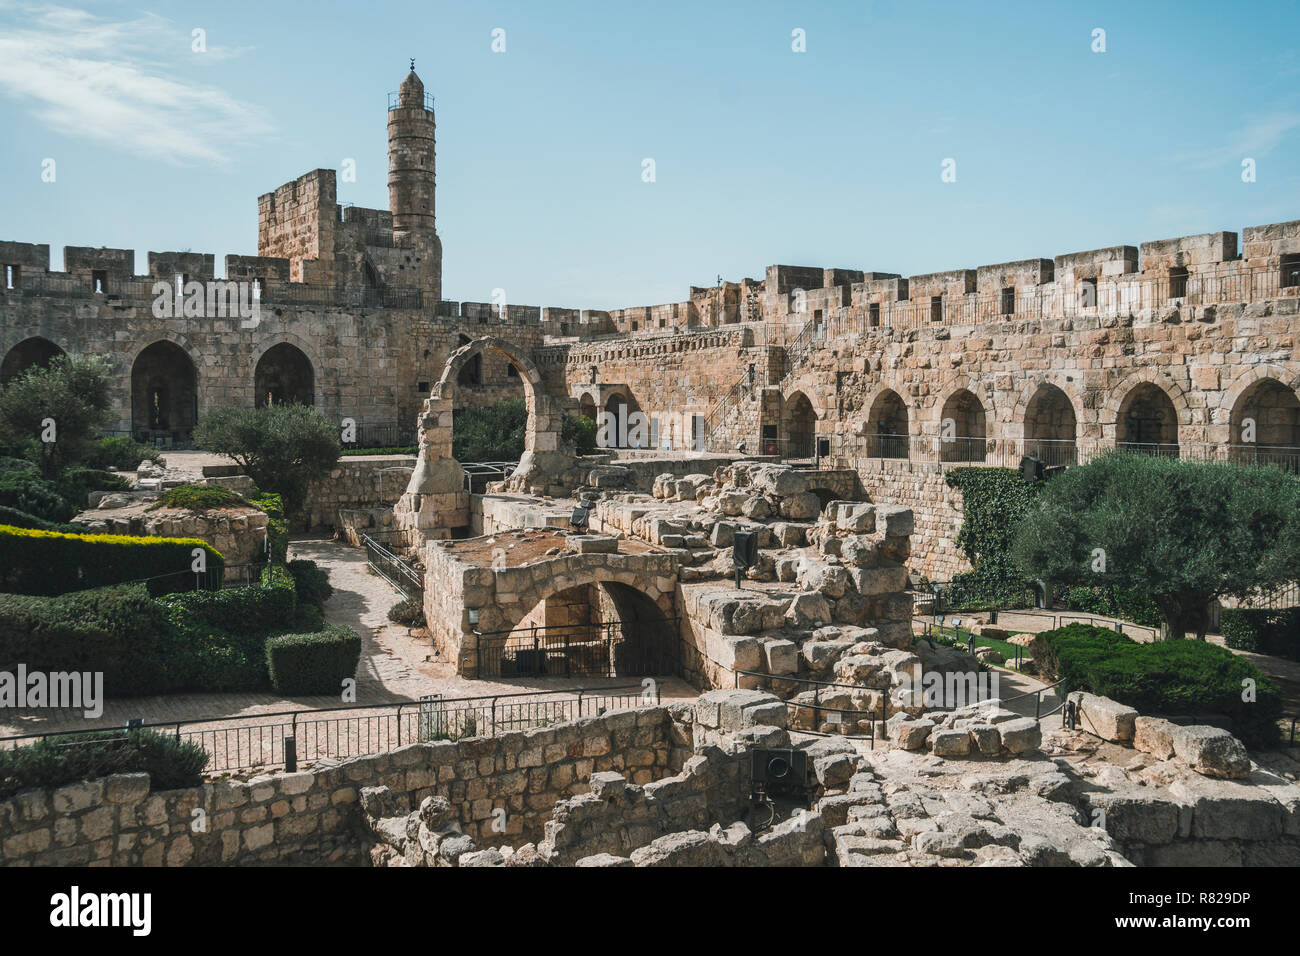 Turm Davids oder Jerusalem Zitadelle. Jerusalem, Israel. Hof, hinter einer hohen Mauer aus Stein. Sightseeing in der Altstadt von Irusalim Stockfoto